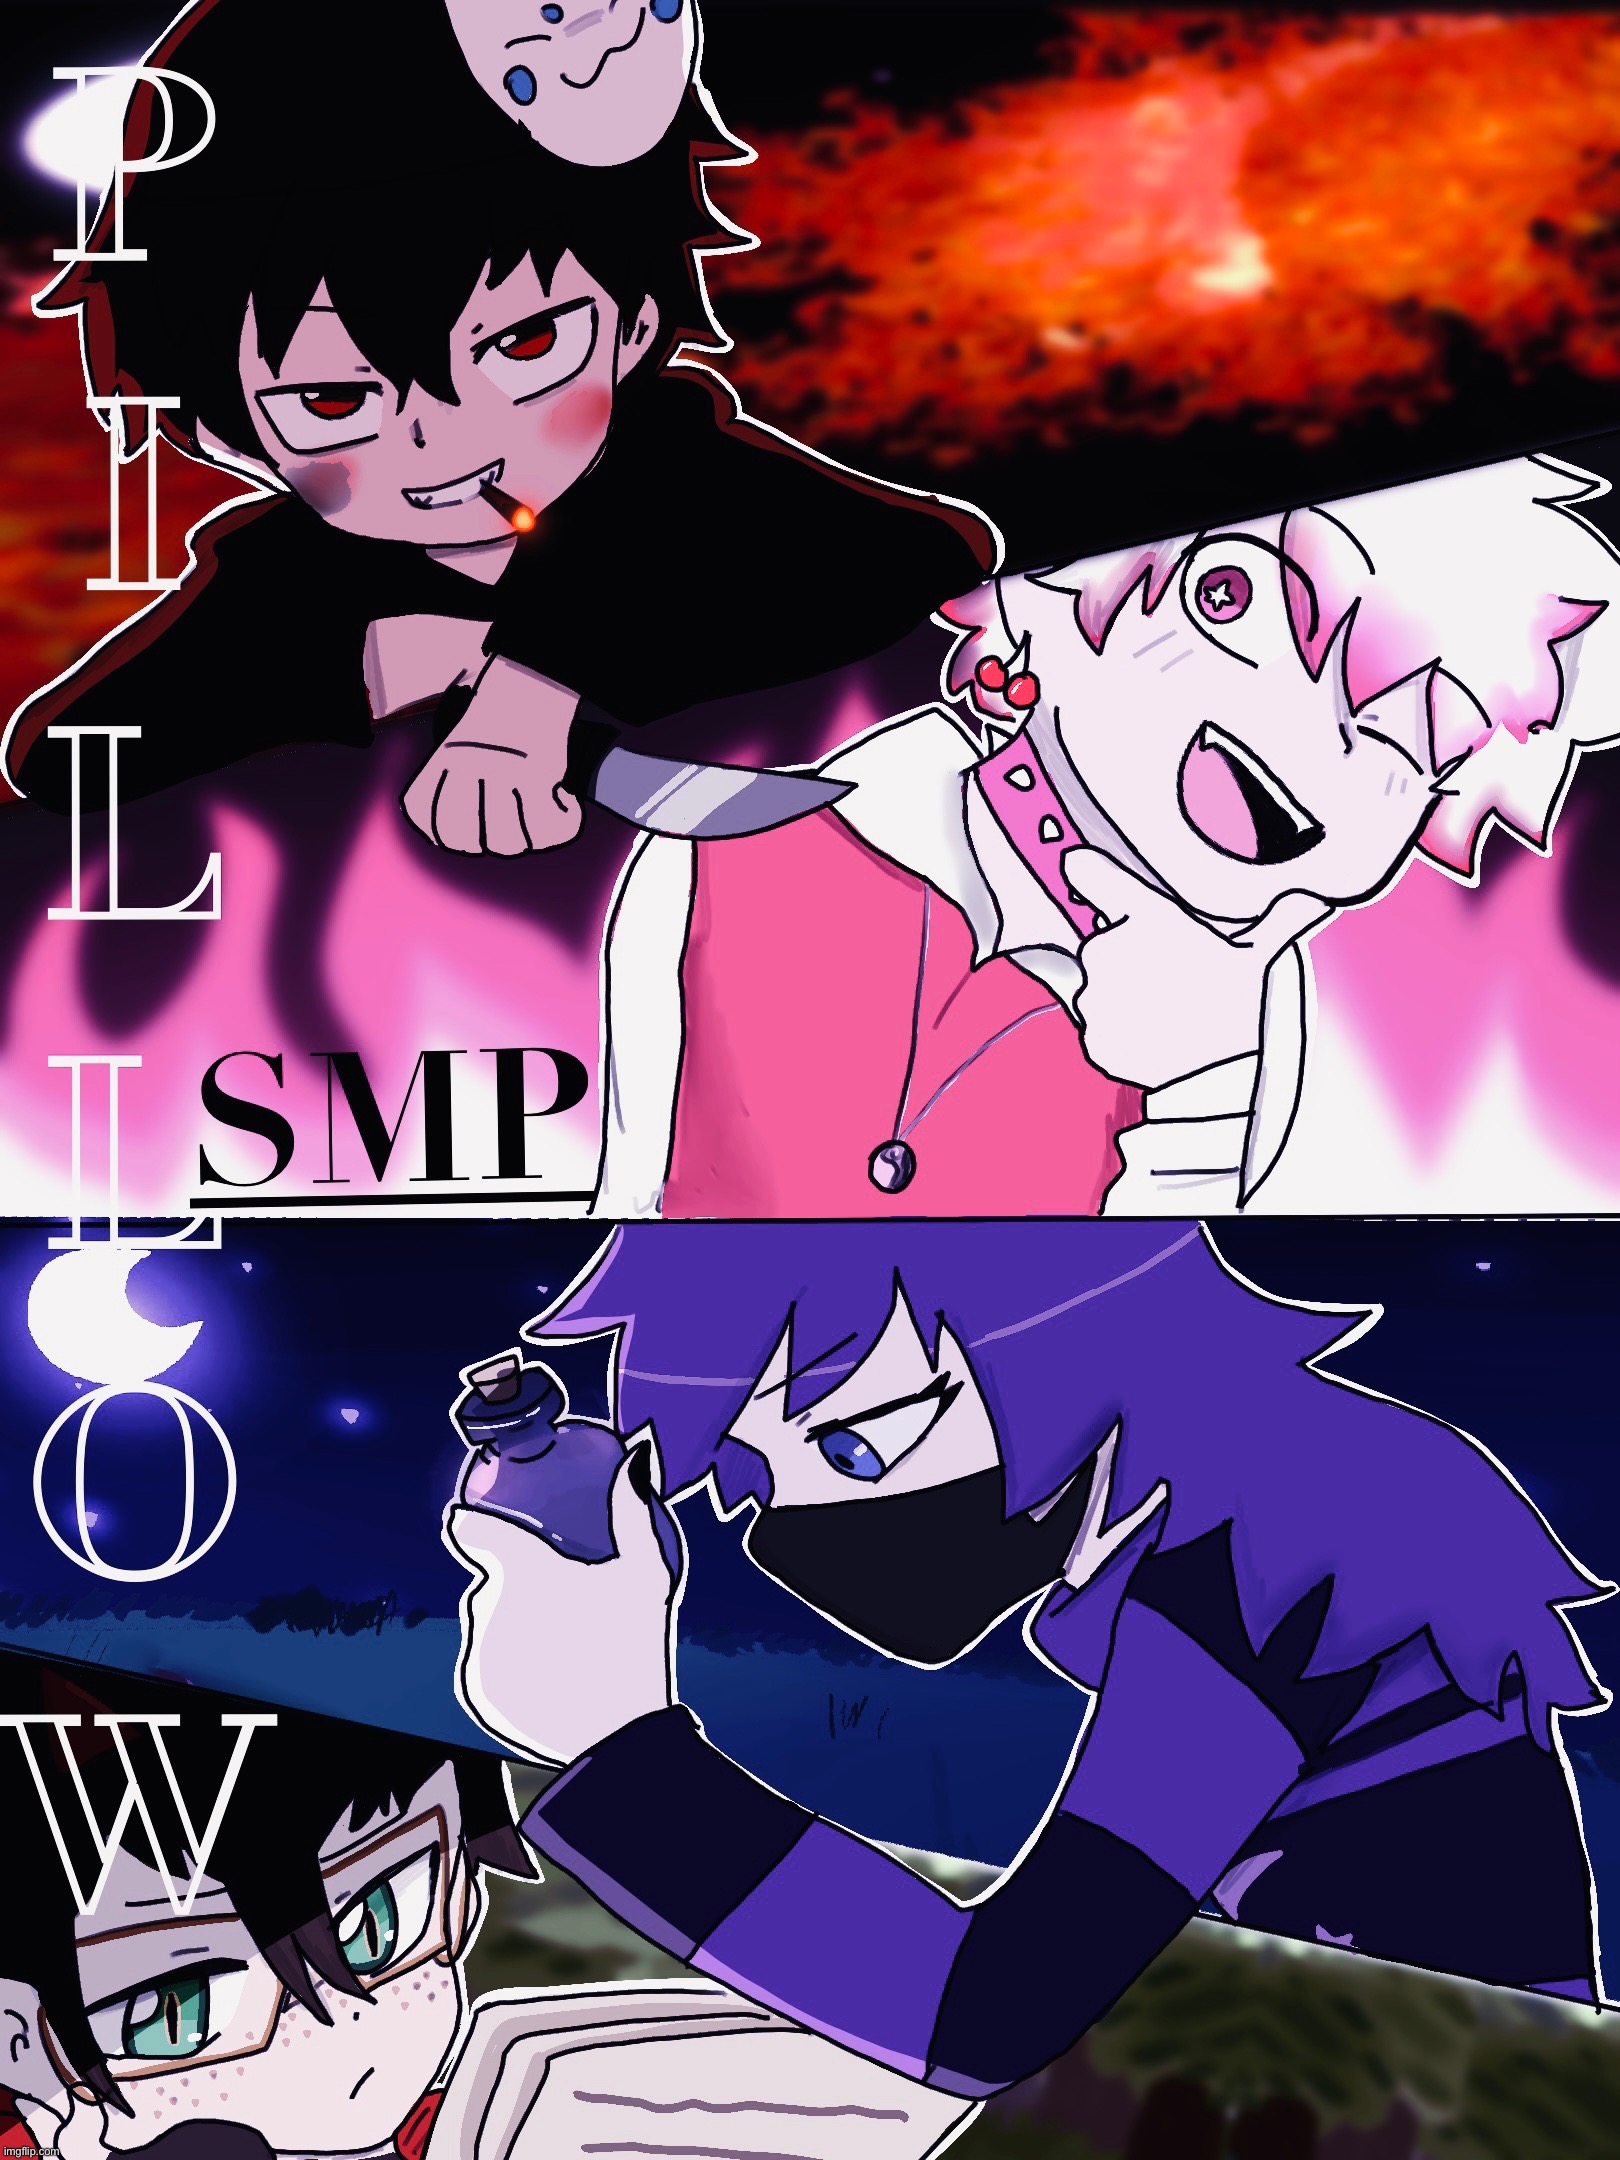 枕元SMP. | image tagged in pillowsmp,poster,anime | made w/ Imgflip meme maker